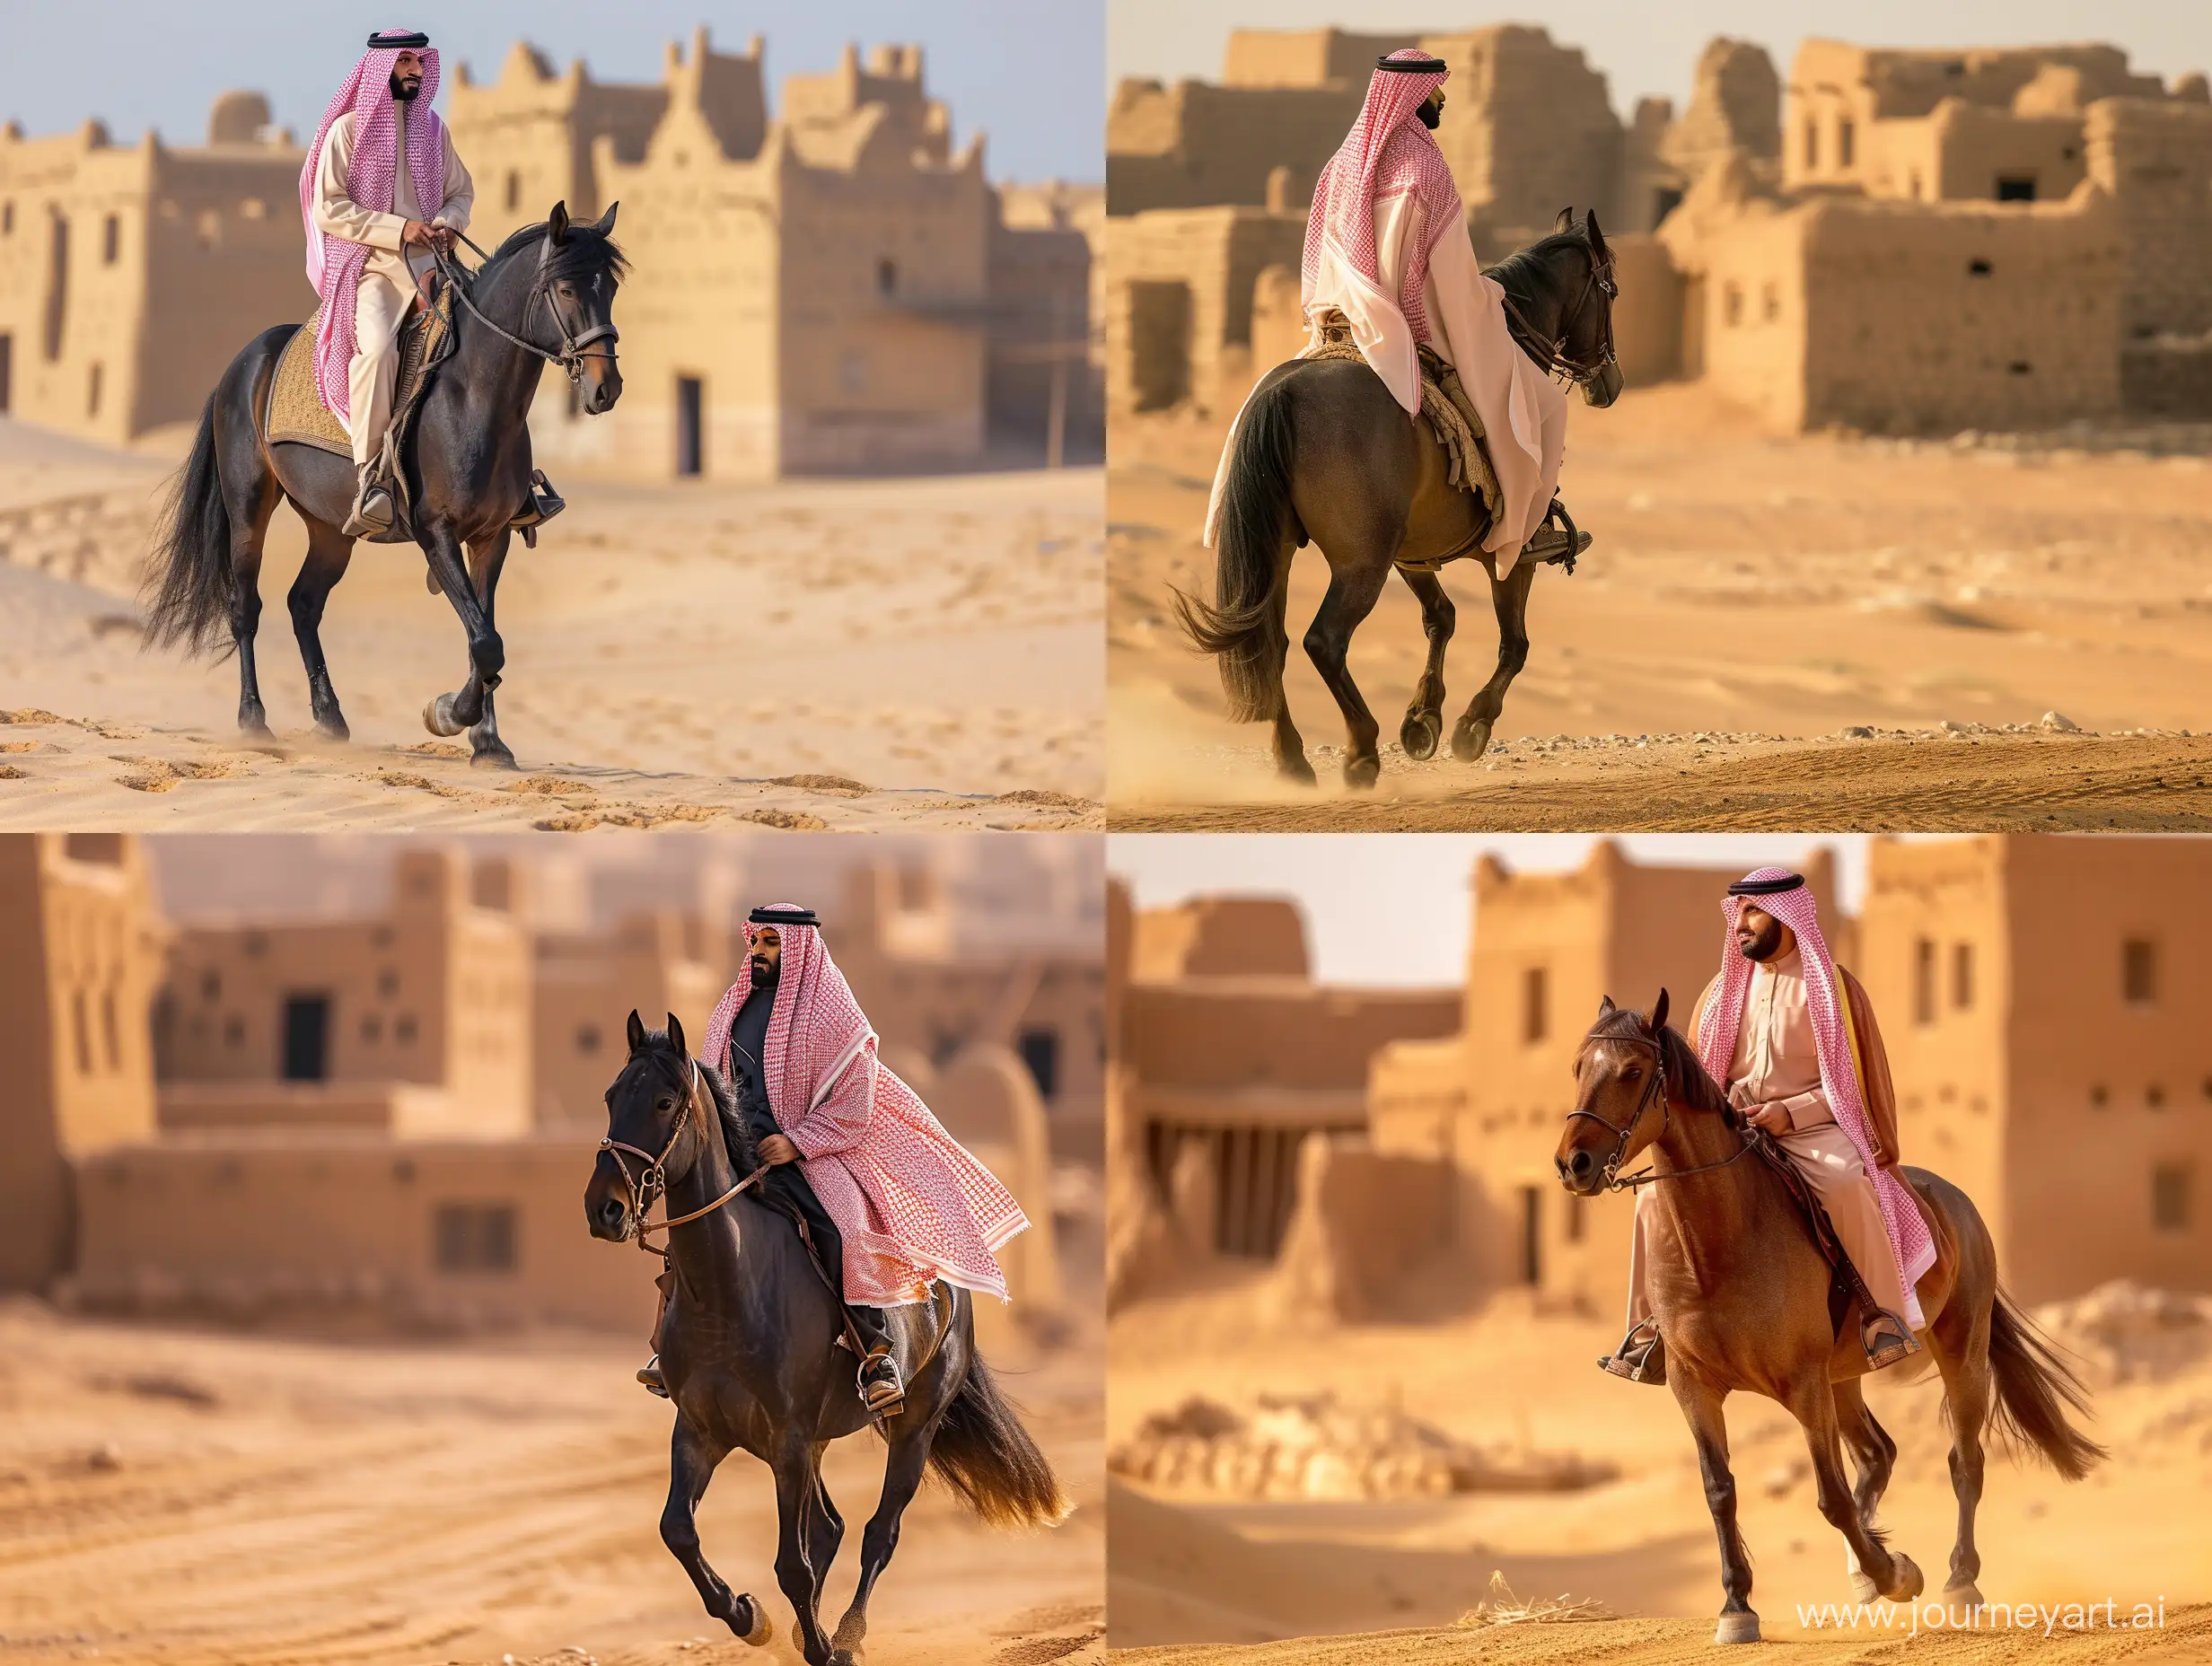 لقطه لكامل الجسم لرجل سعودي بلباس تقليدي يمتطي حصانا عربيا في الصحراء و الخلفية بيوت طينية قديمة من تراث المملكة العربية السعودية 